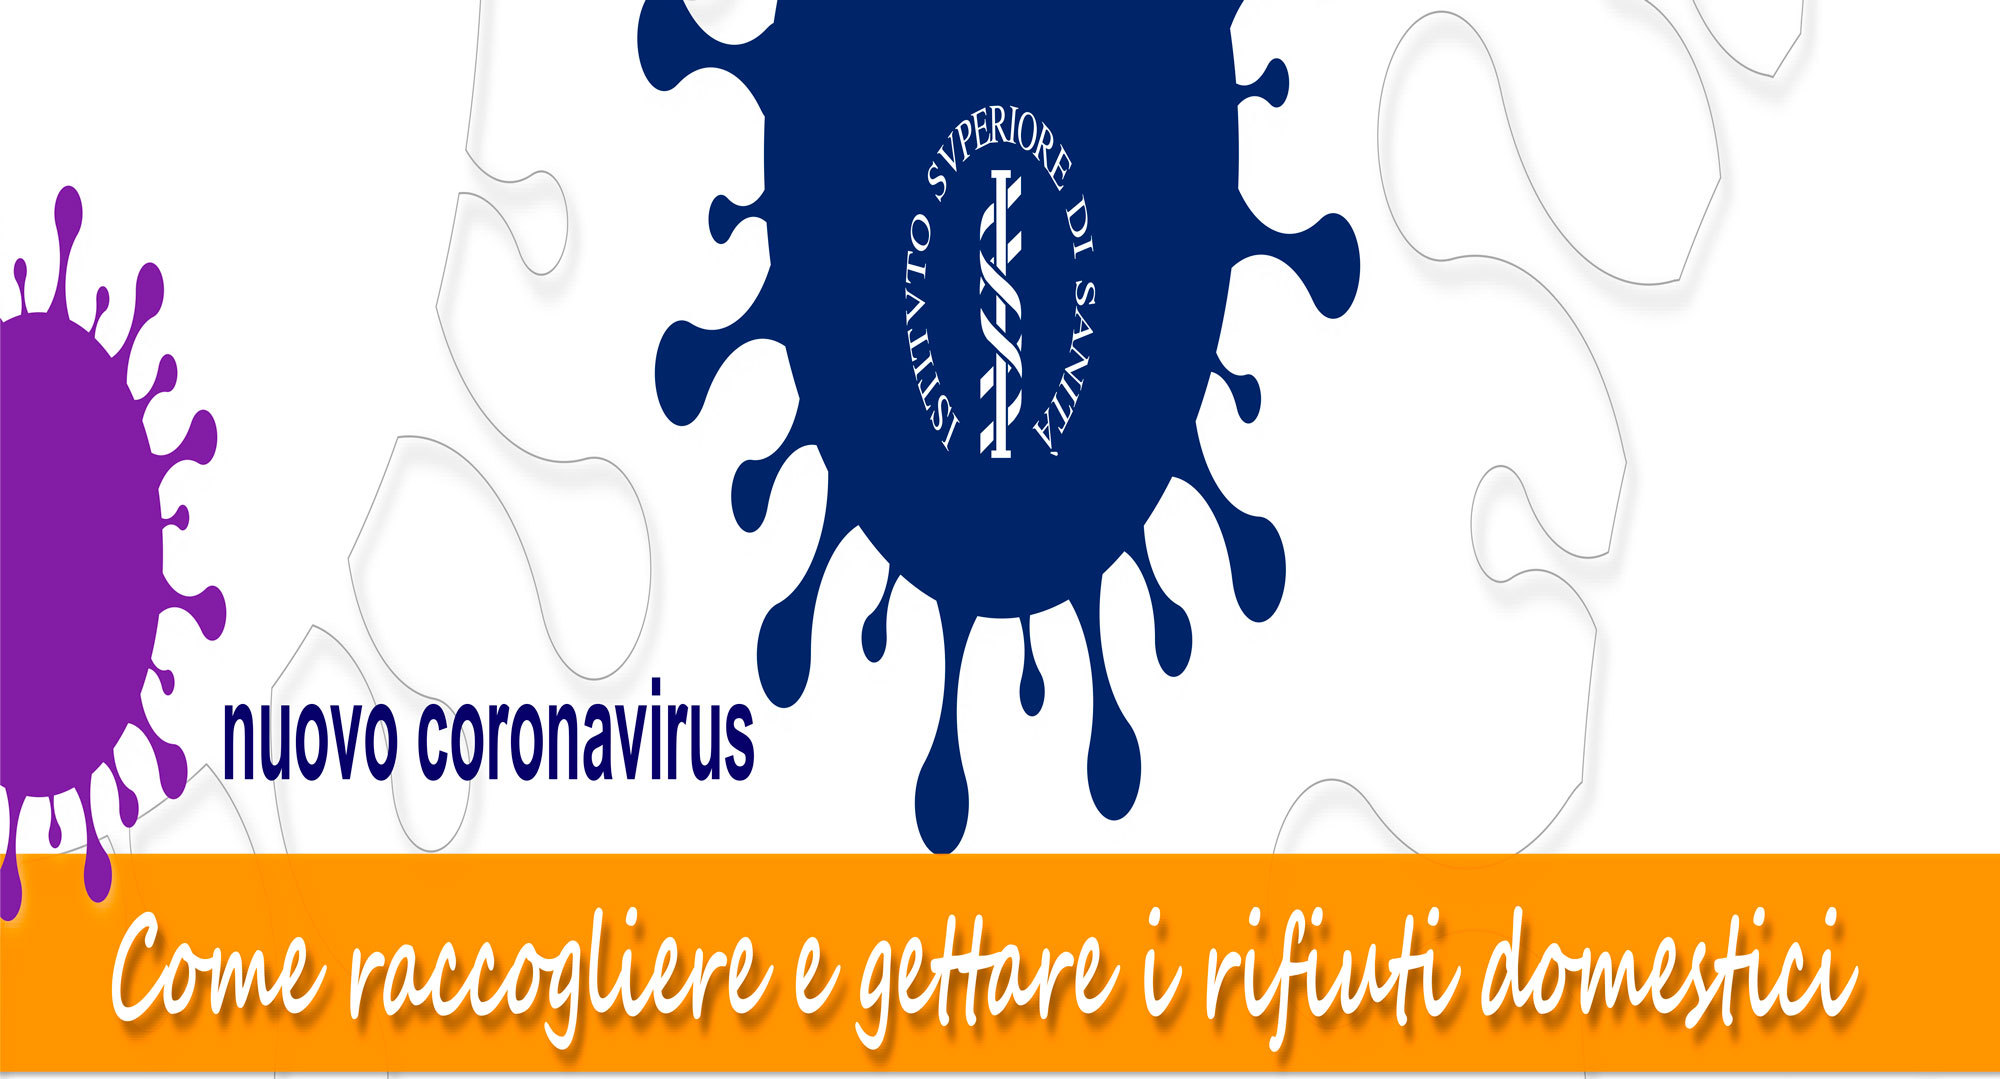 Emergenza Coronavirus – Come raccogliere e gettare i rifiuti domestici